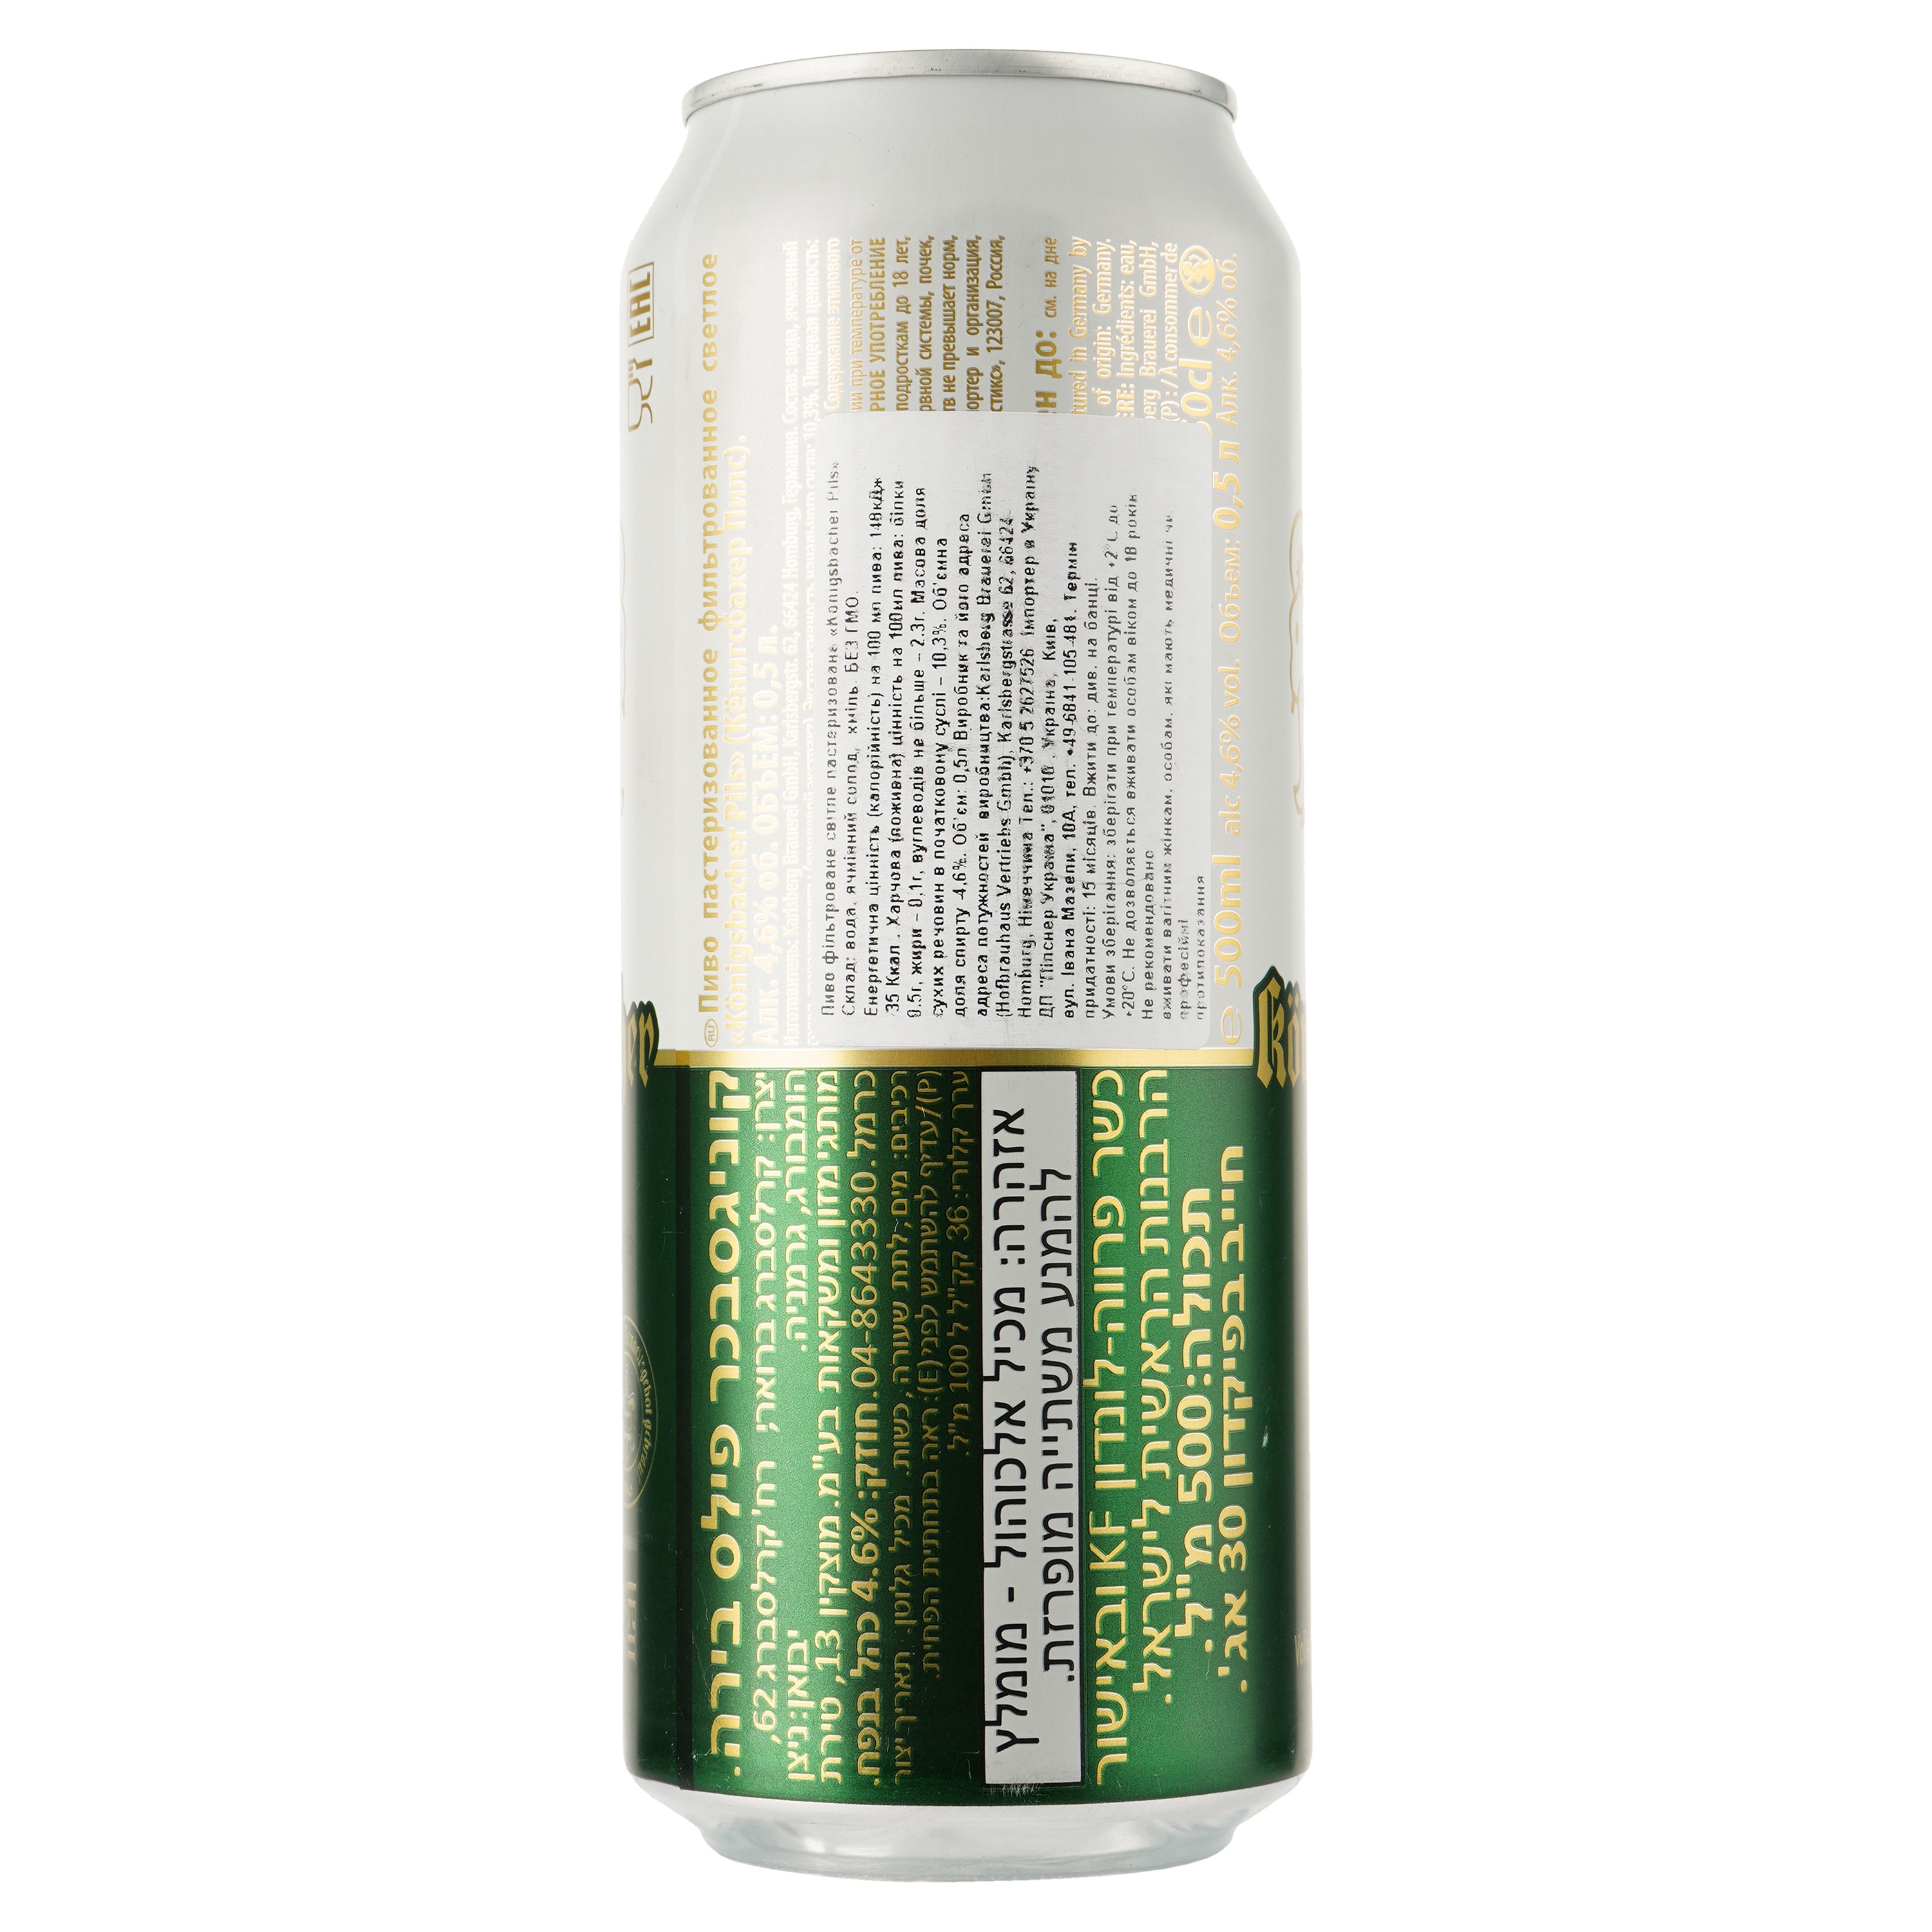 Пиво Konigsbacher Pils світле, 4.6%, з/б, 0.5 л - фото 2